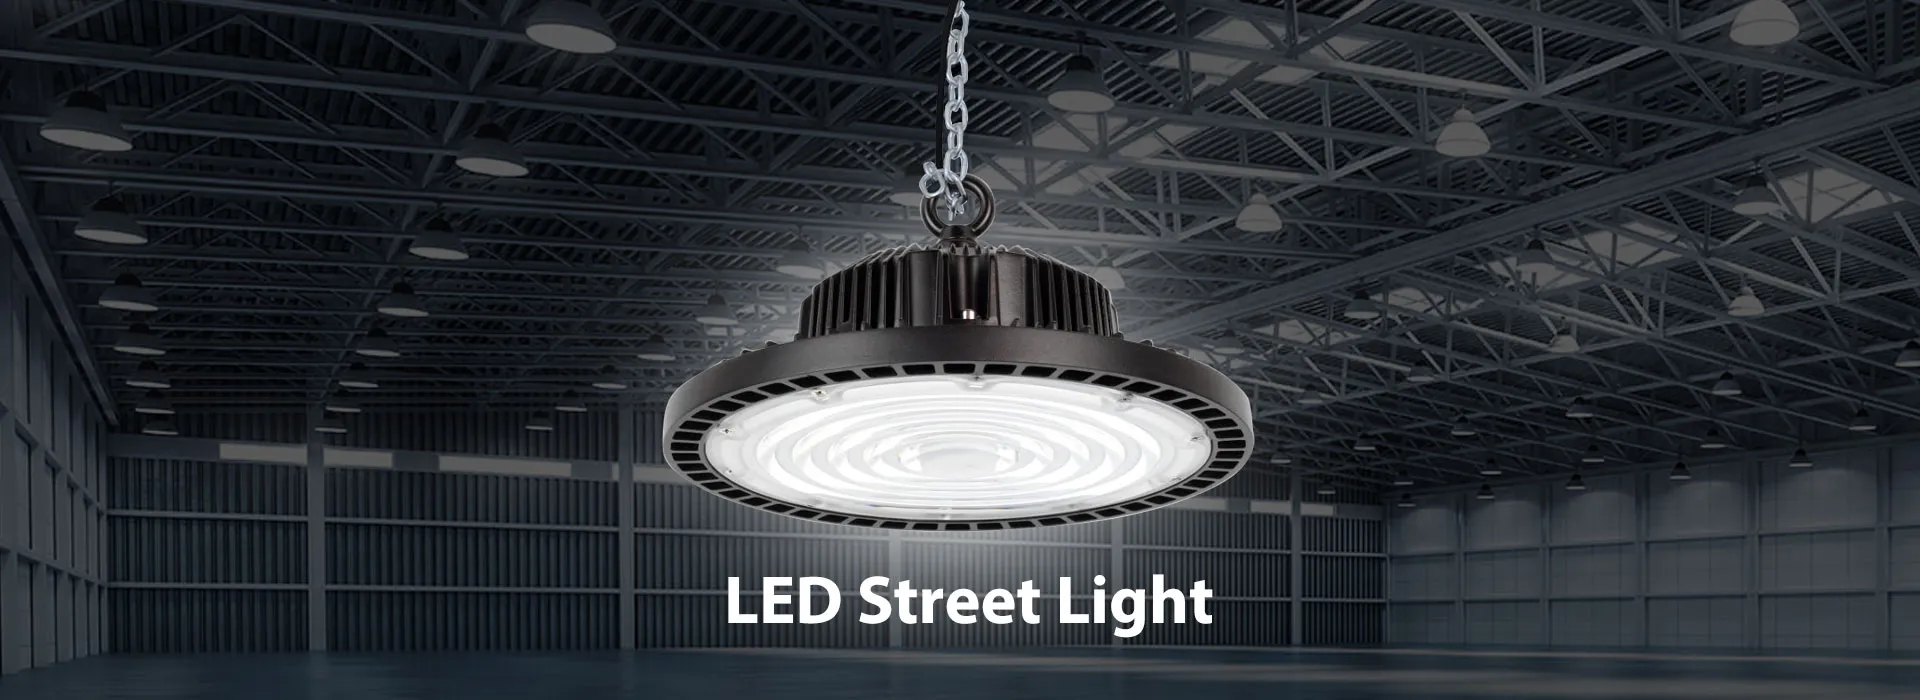 Nhà máy đèn đường LED Trung Quốc